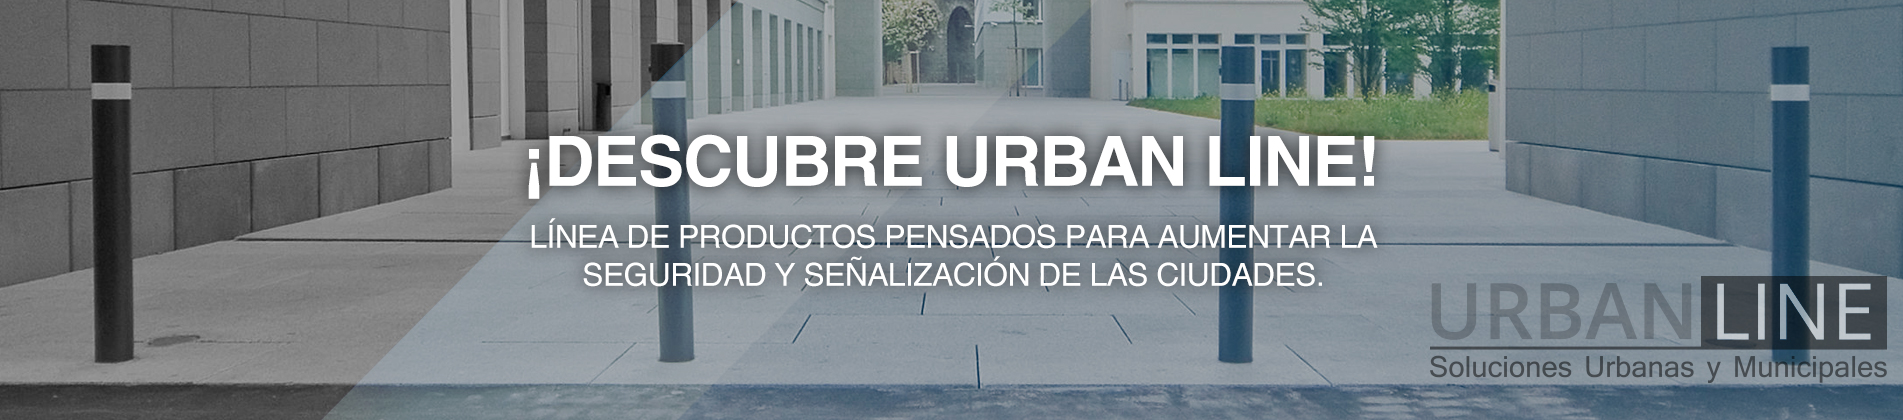 Gama_de_Productos_Urbanos_Urbanismo_Suministros_Industriales_Suitec_Fenix-home